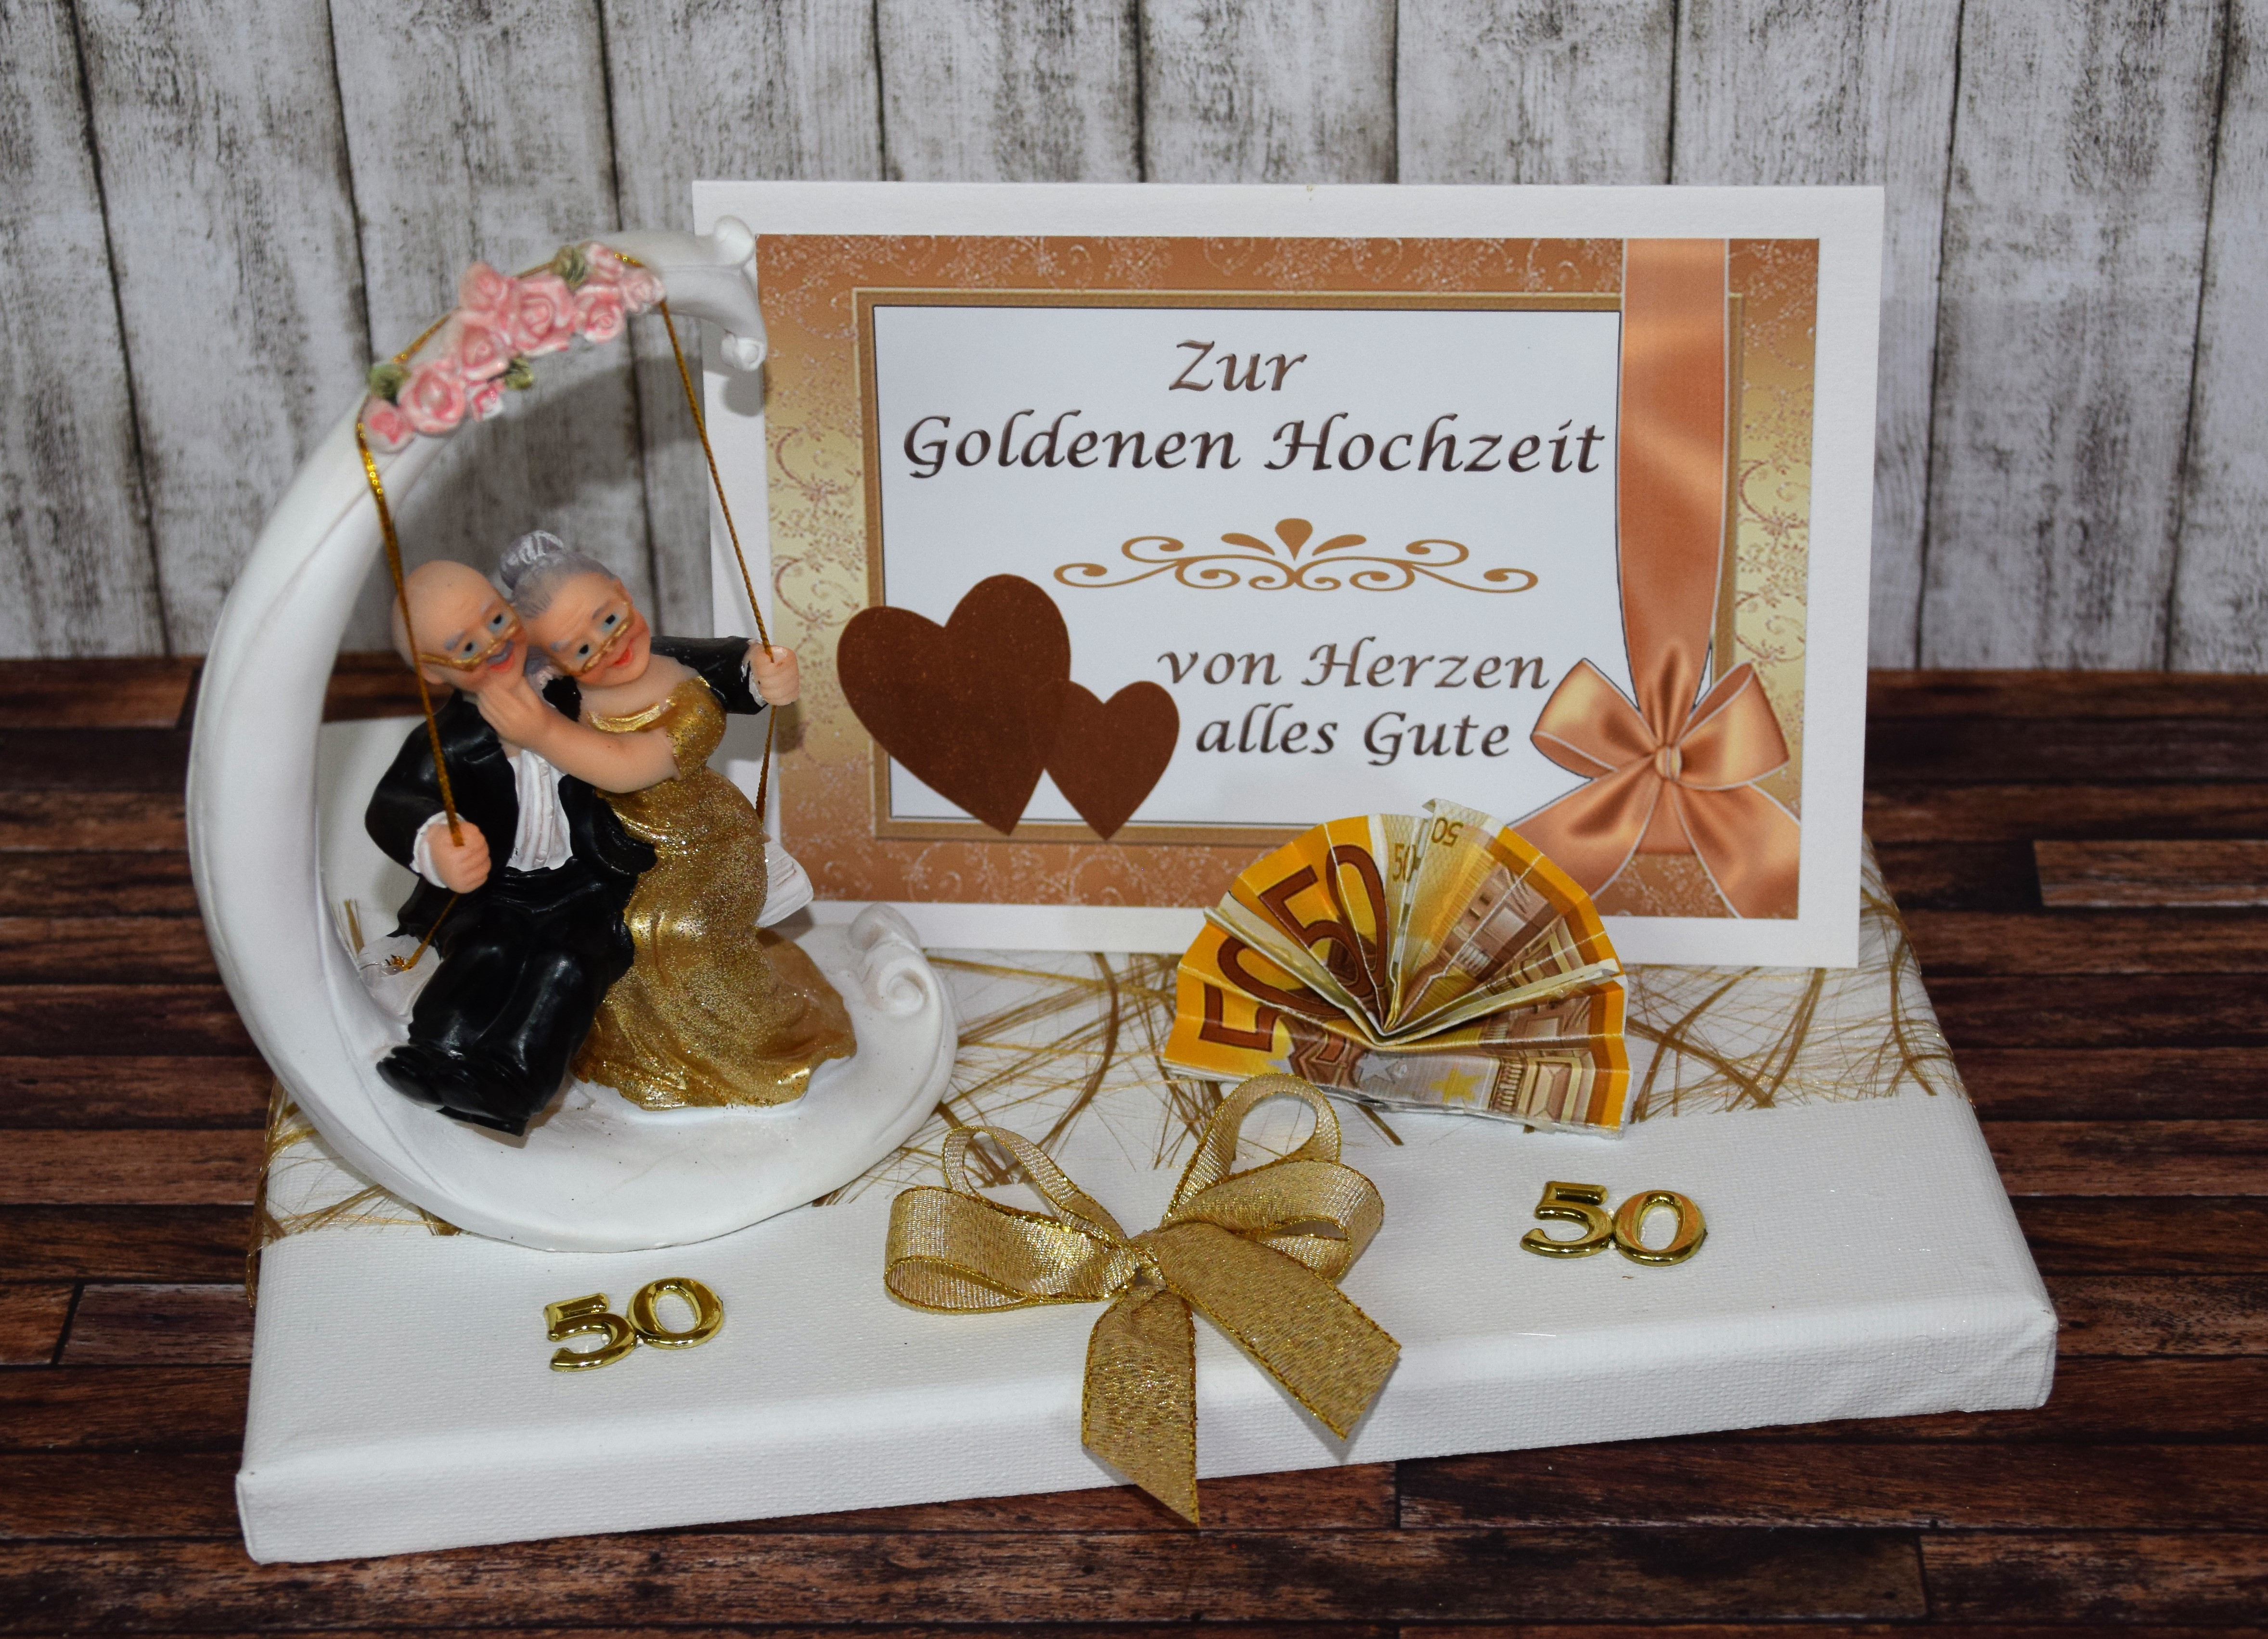 Geschenk Zur Goldenen Hochzeit Ideen
 Geld Geschenk zur goldenen Hochzeit mit Goldpaar auf Schaukel